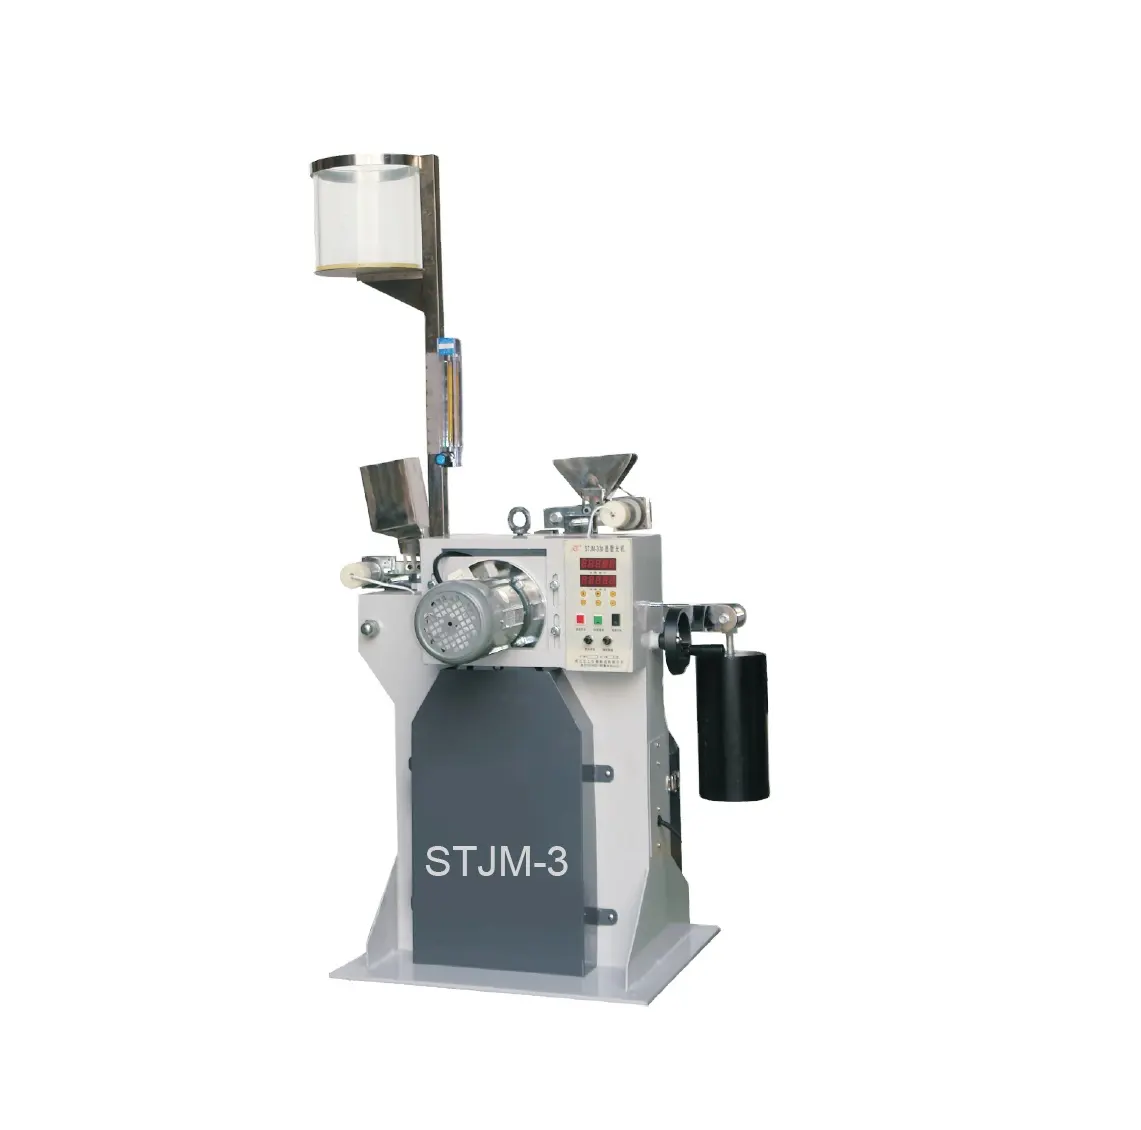 Lucidatrice accelerata pavimentazione della macchina della smerigliatrice della smerigliatrice di accelerazione STJM-3 per il laboratorio civile dei materiali della pietra di macinazione (PSV)